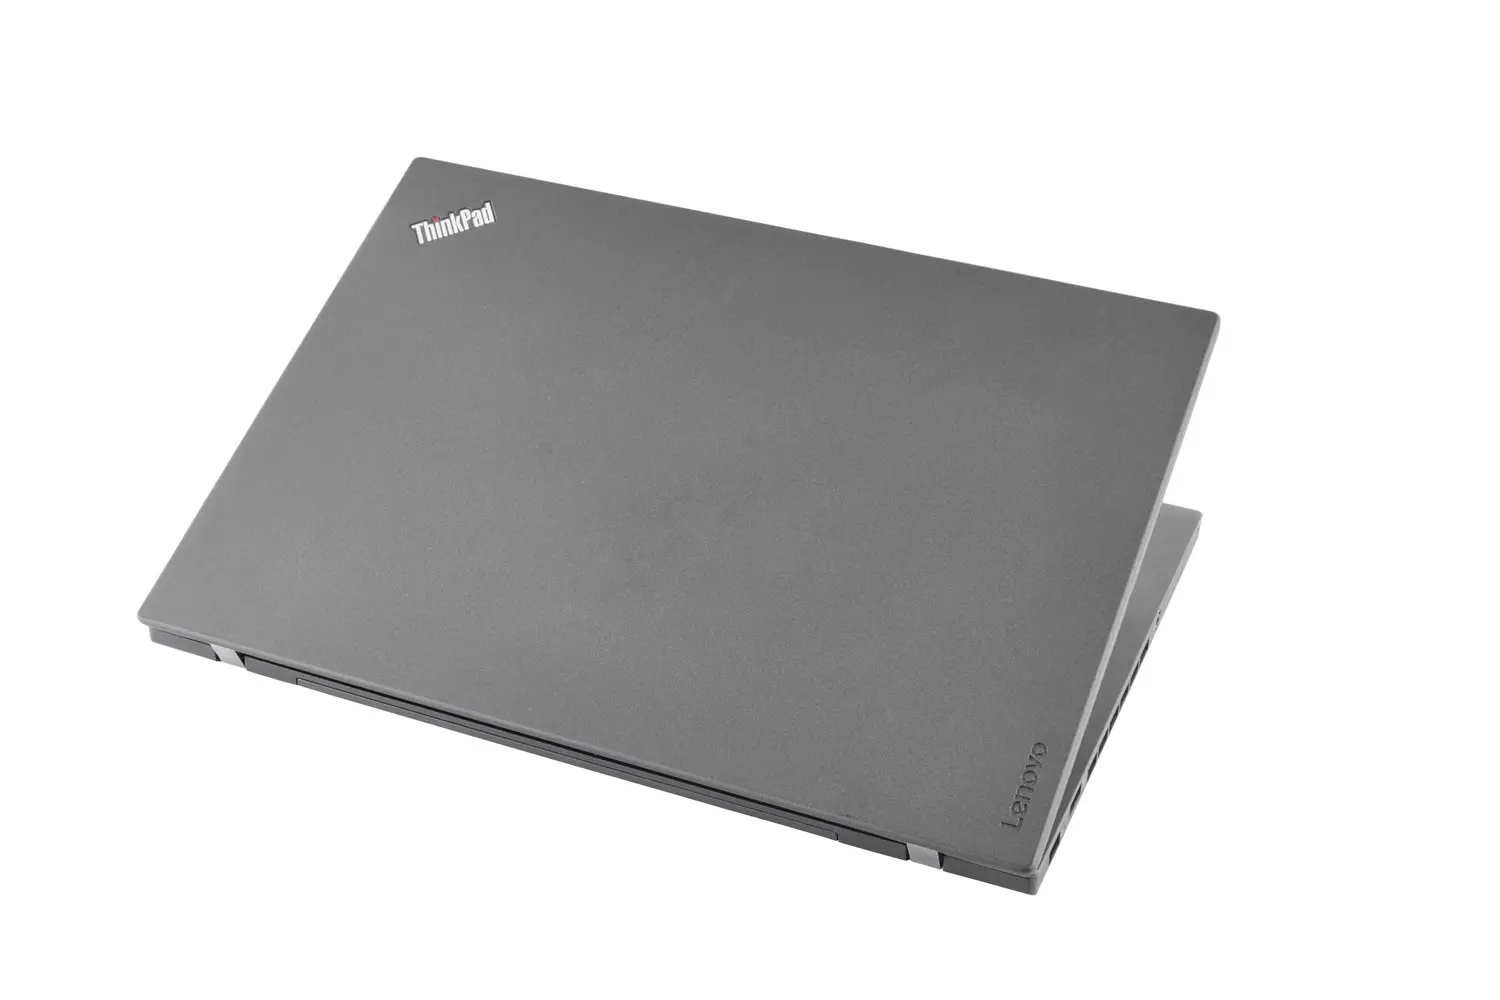 Lenovo ThinkPad T460p, i7, 14 Zoll WQHD IPS, 16GB, 250GB SSD, 1TB HDD, Webcam, beleuchtete Tastatur, Windows 10 Pro